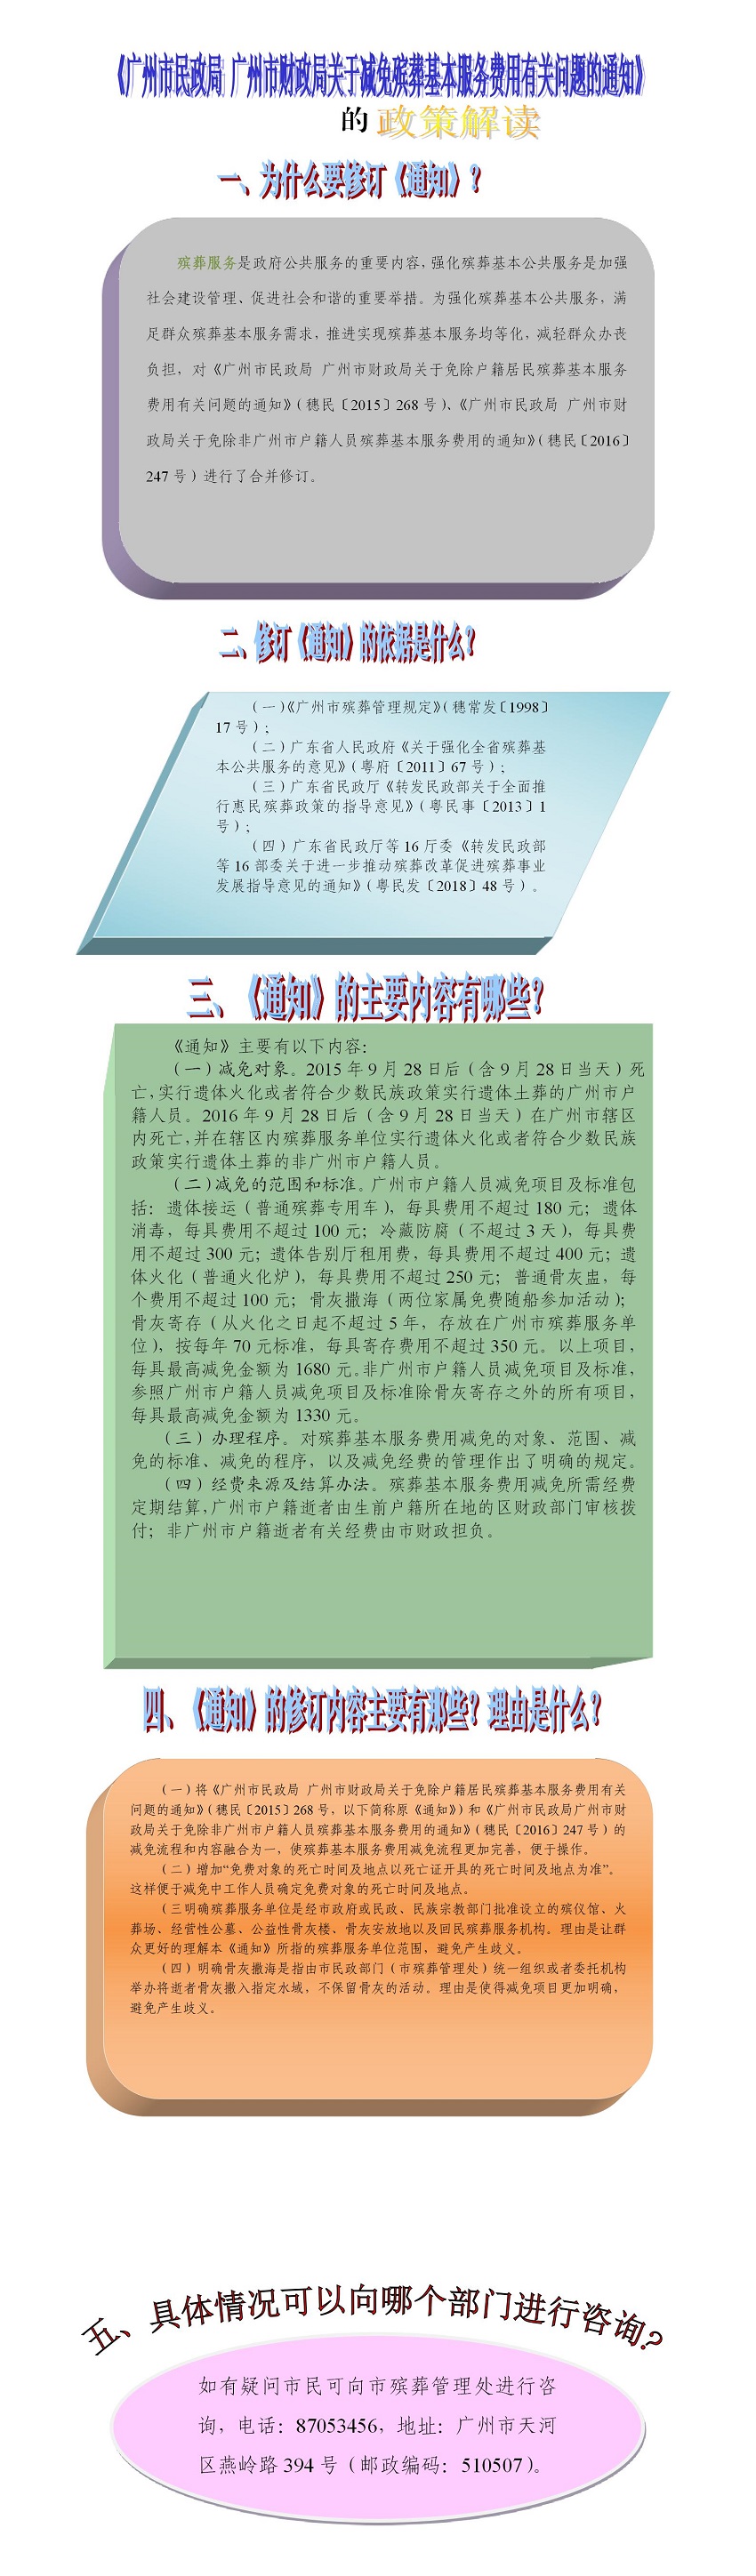 6985243【一图读懂】《广州市民政局 广州市财政局关于减免殡葬基本服务费用有关问题的通知》2.jpg